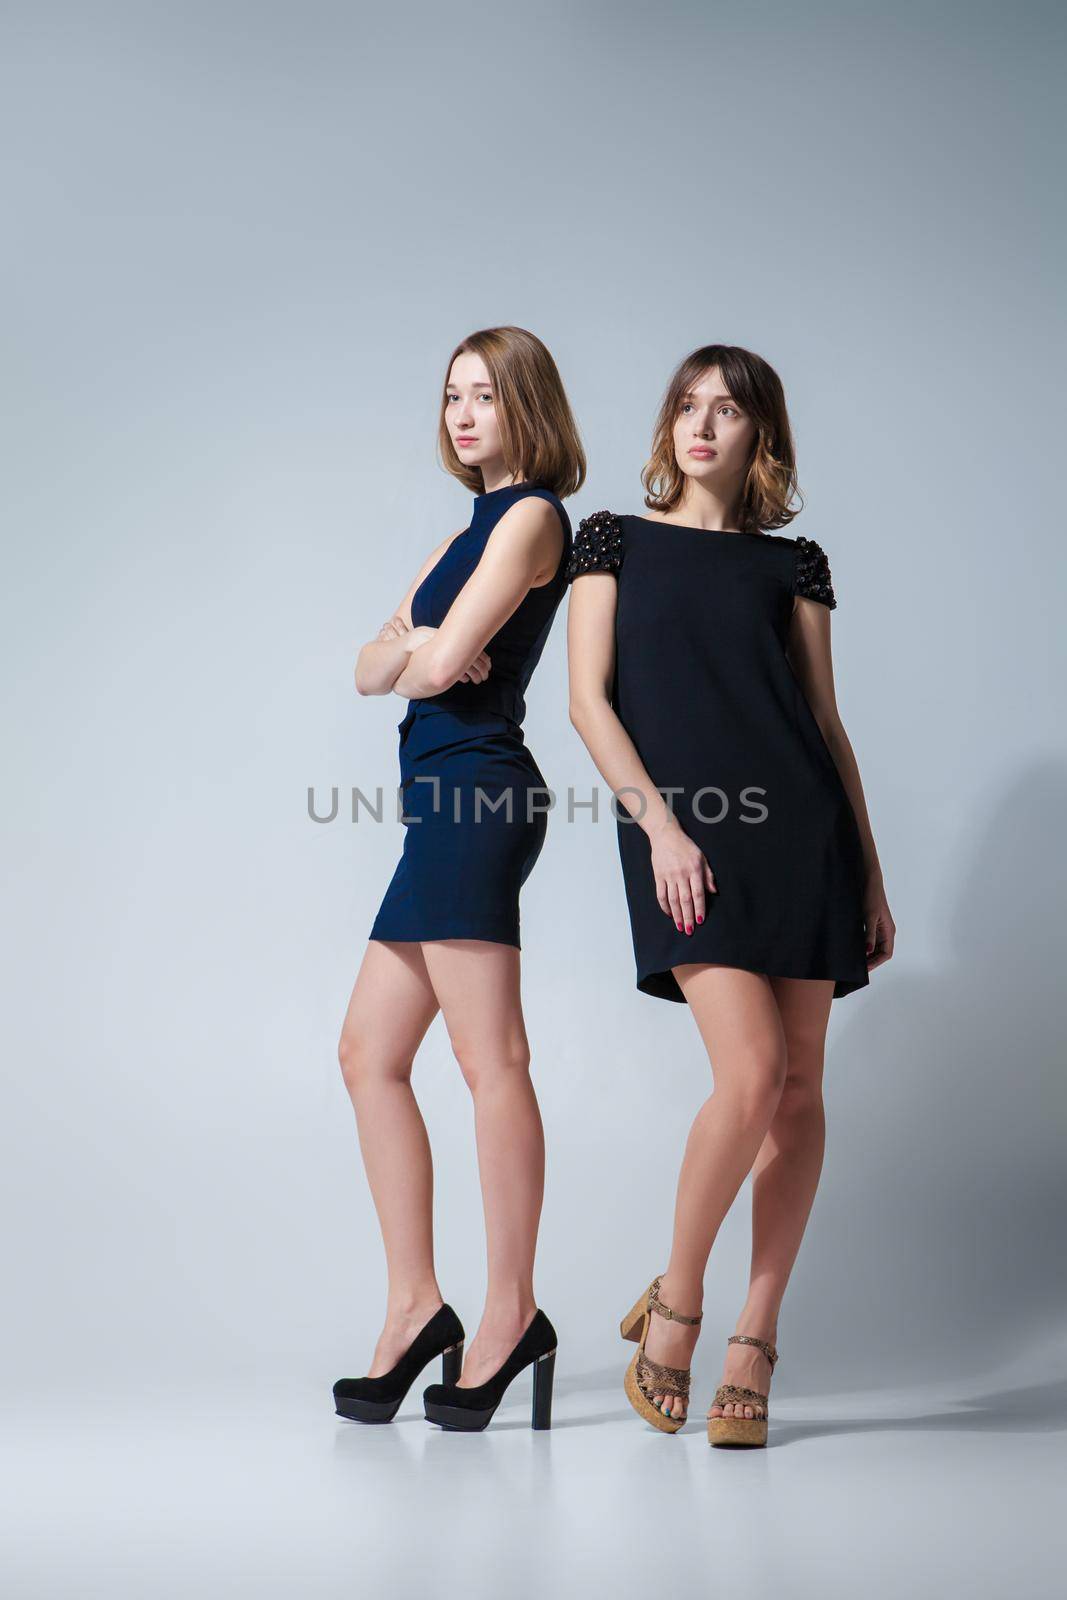 Two beautiful woman posing in dresses by Julenochek